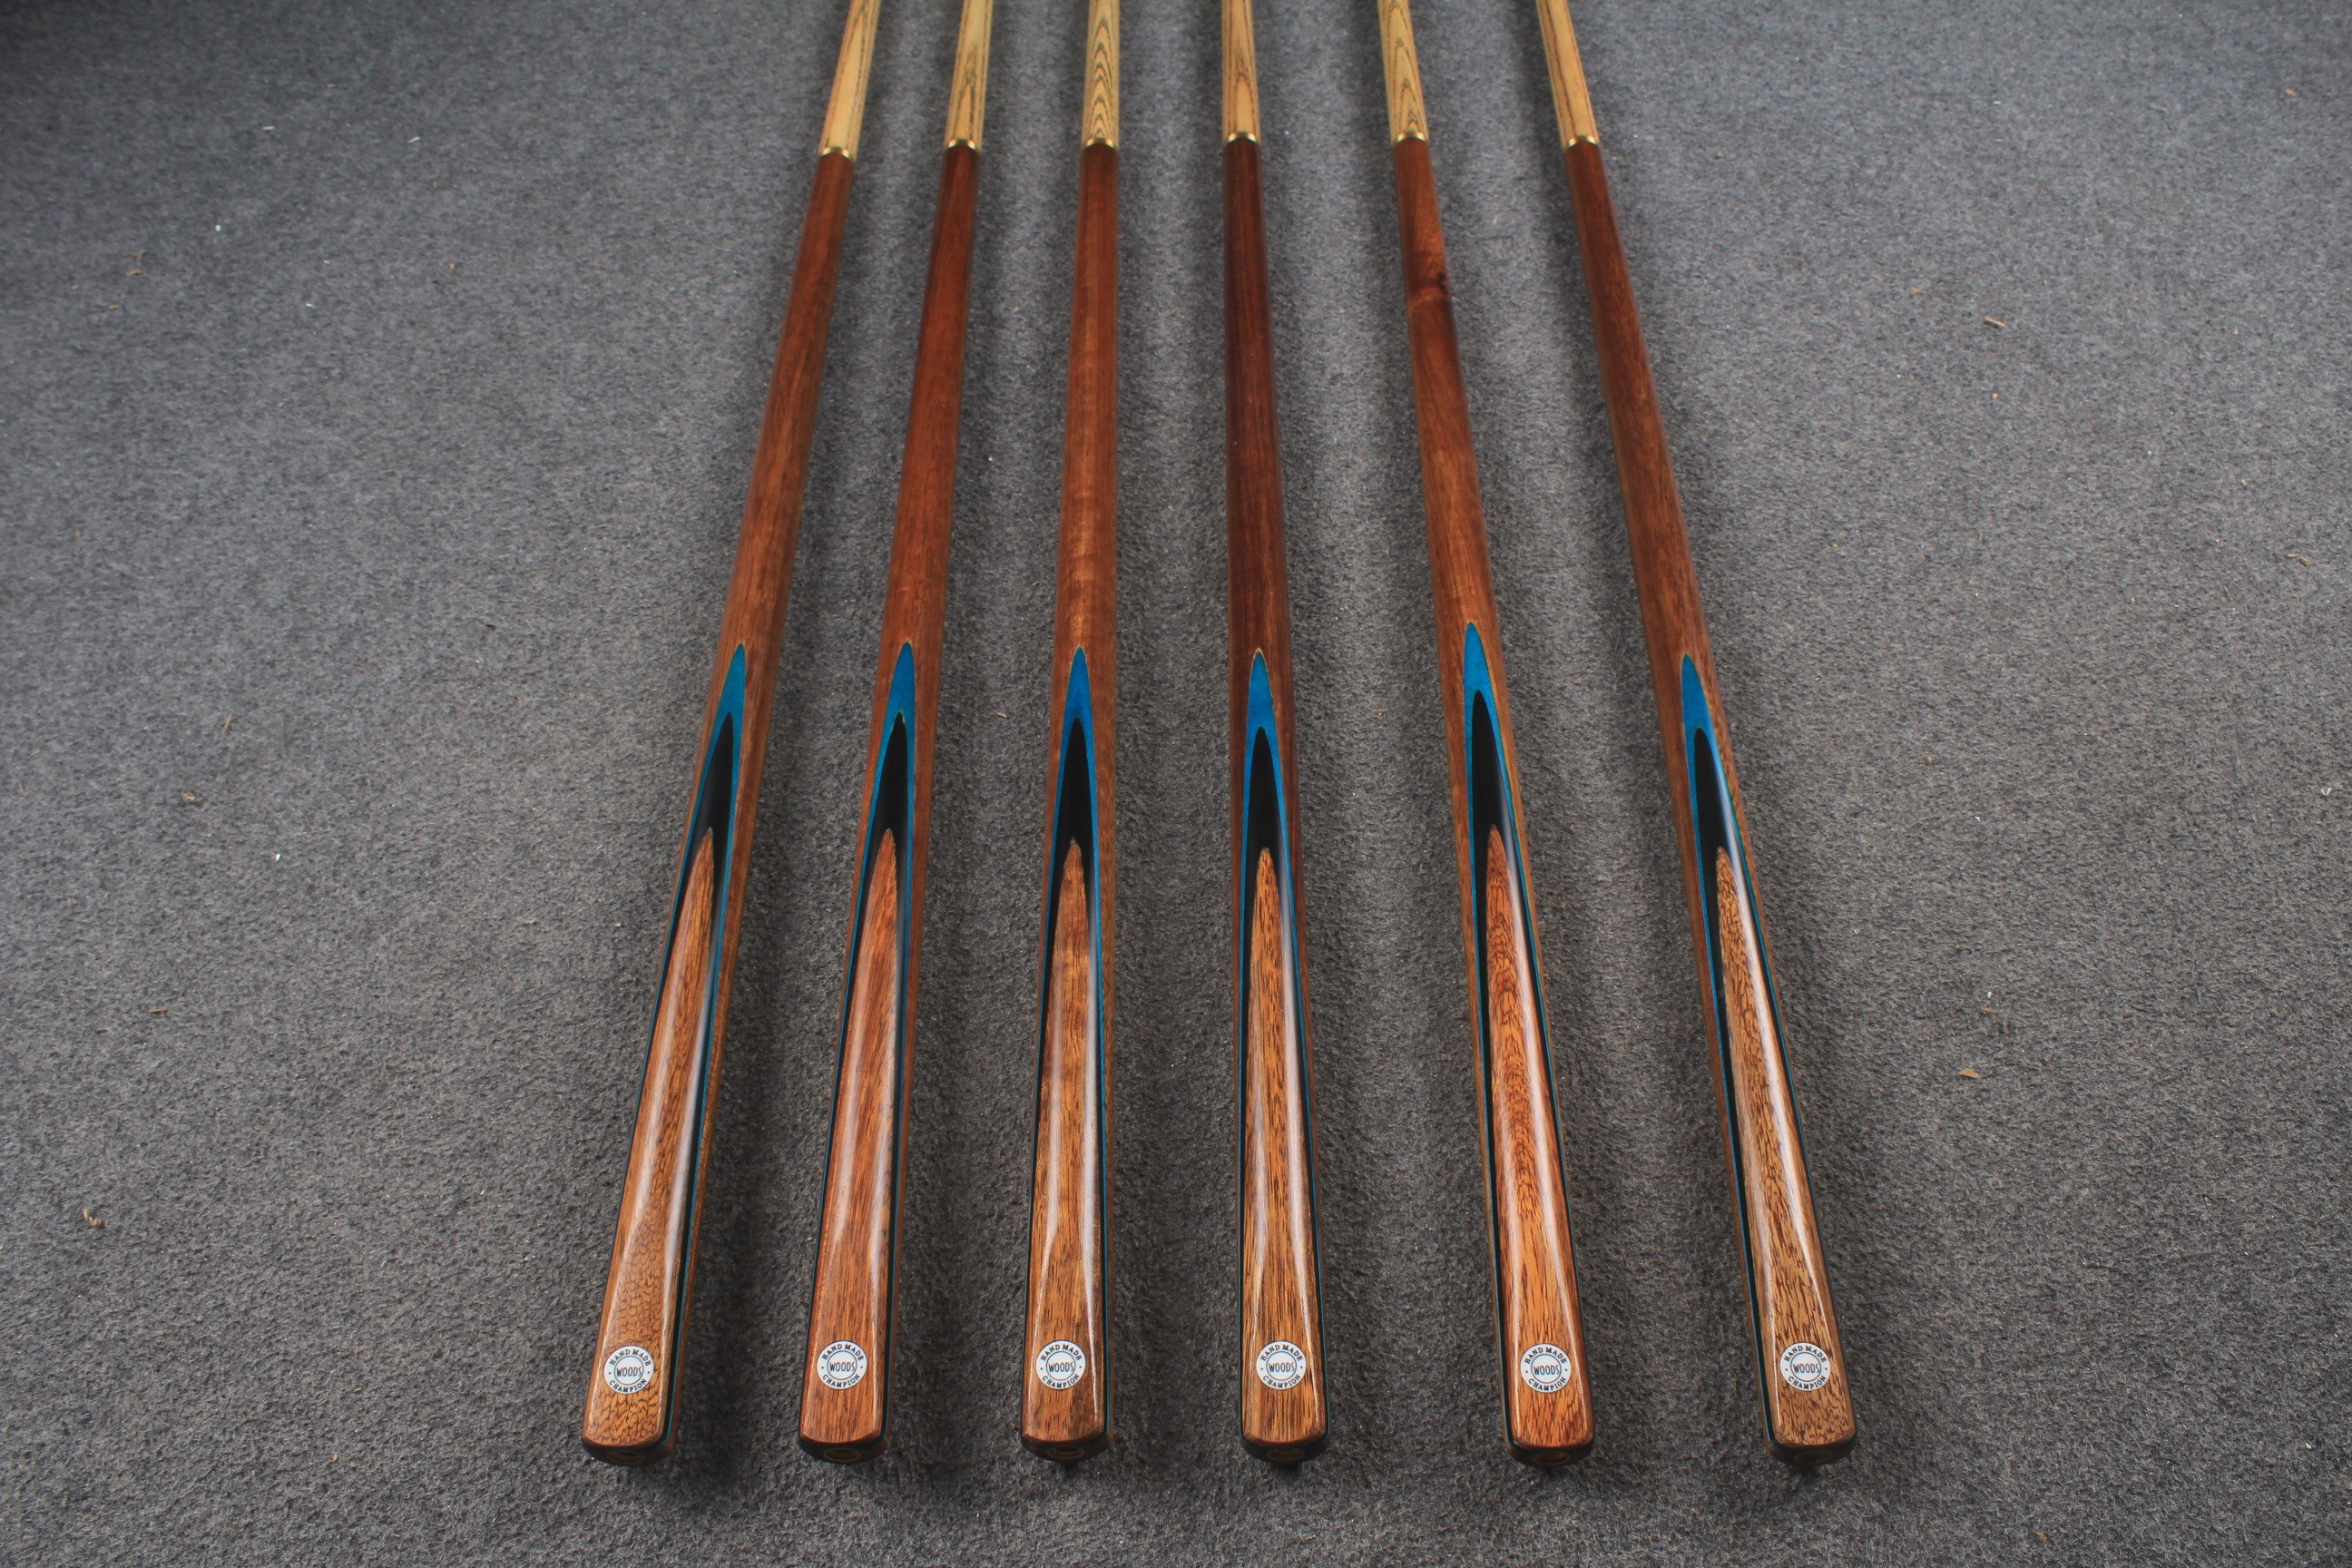 WOODS CUES, 1/2 handmade ash 57" snooker / pool cue #1692-#1697